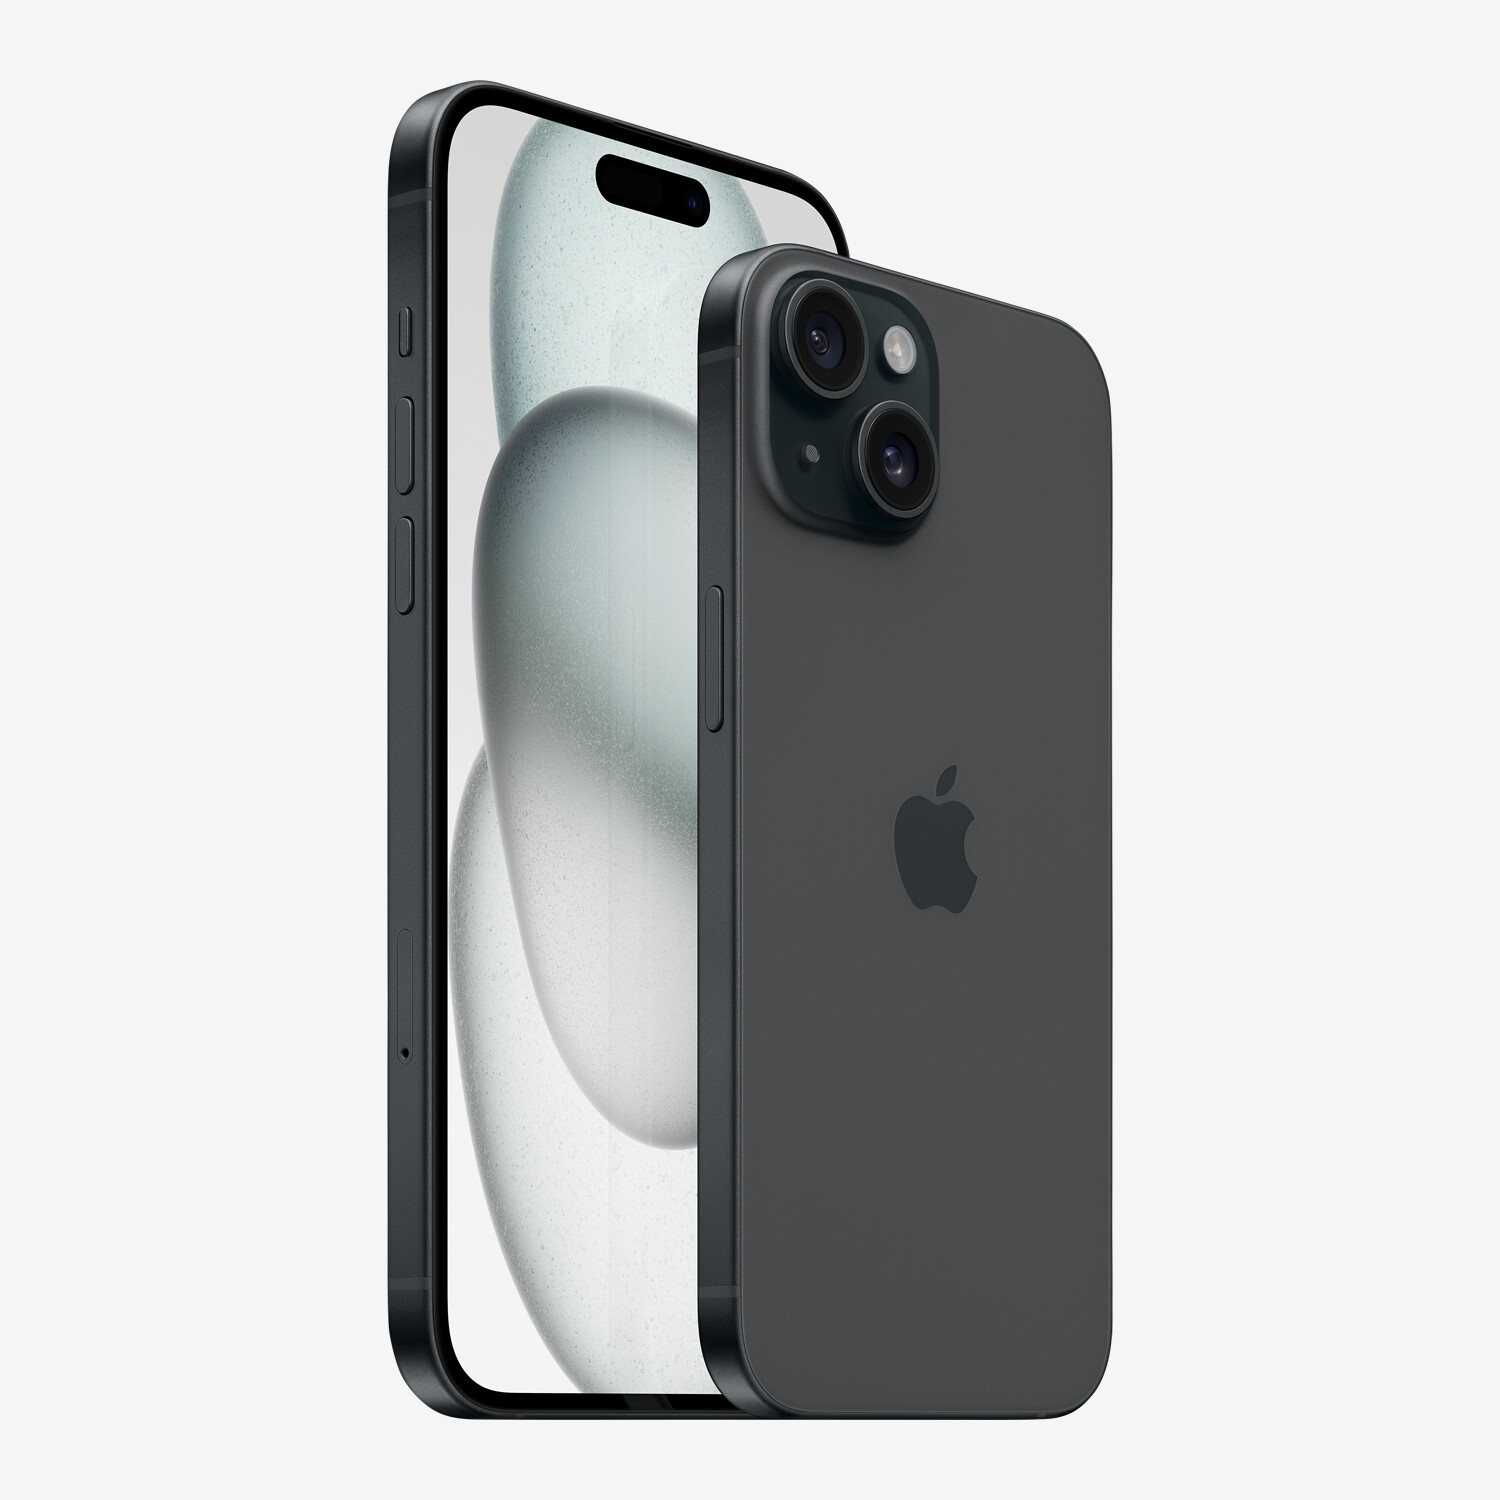 iPhone 8: Apple ajoute une caméra frontale pour la reconnaissance